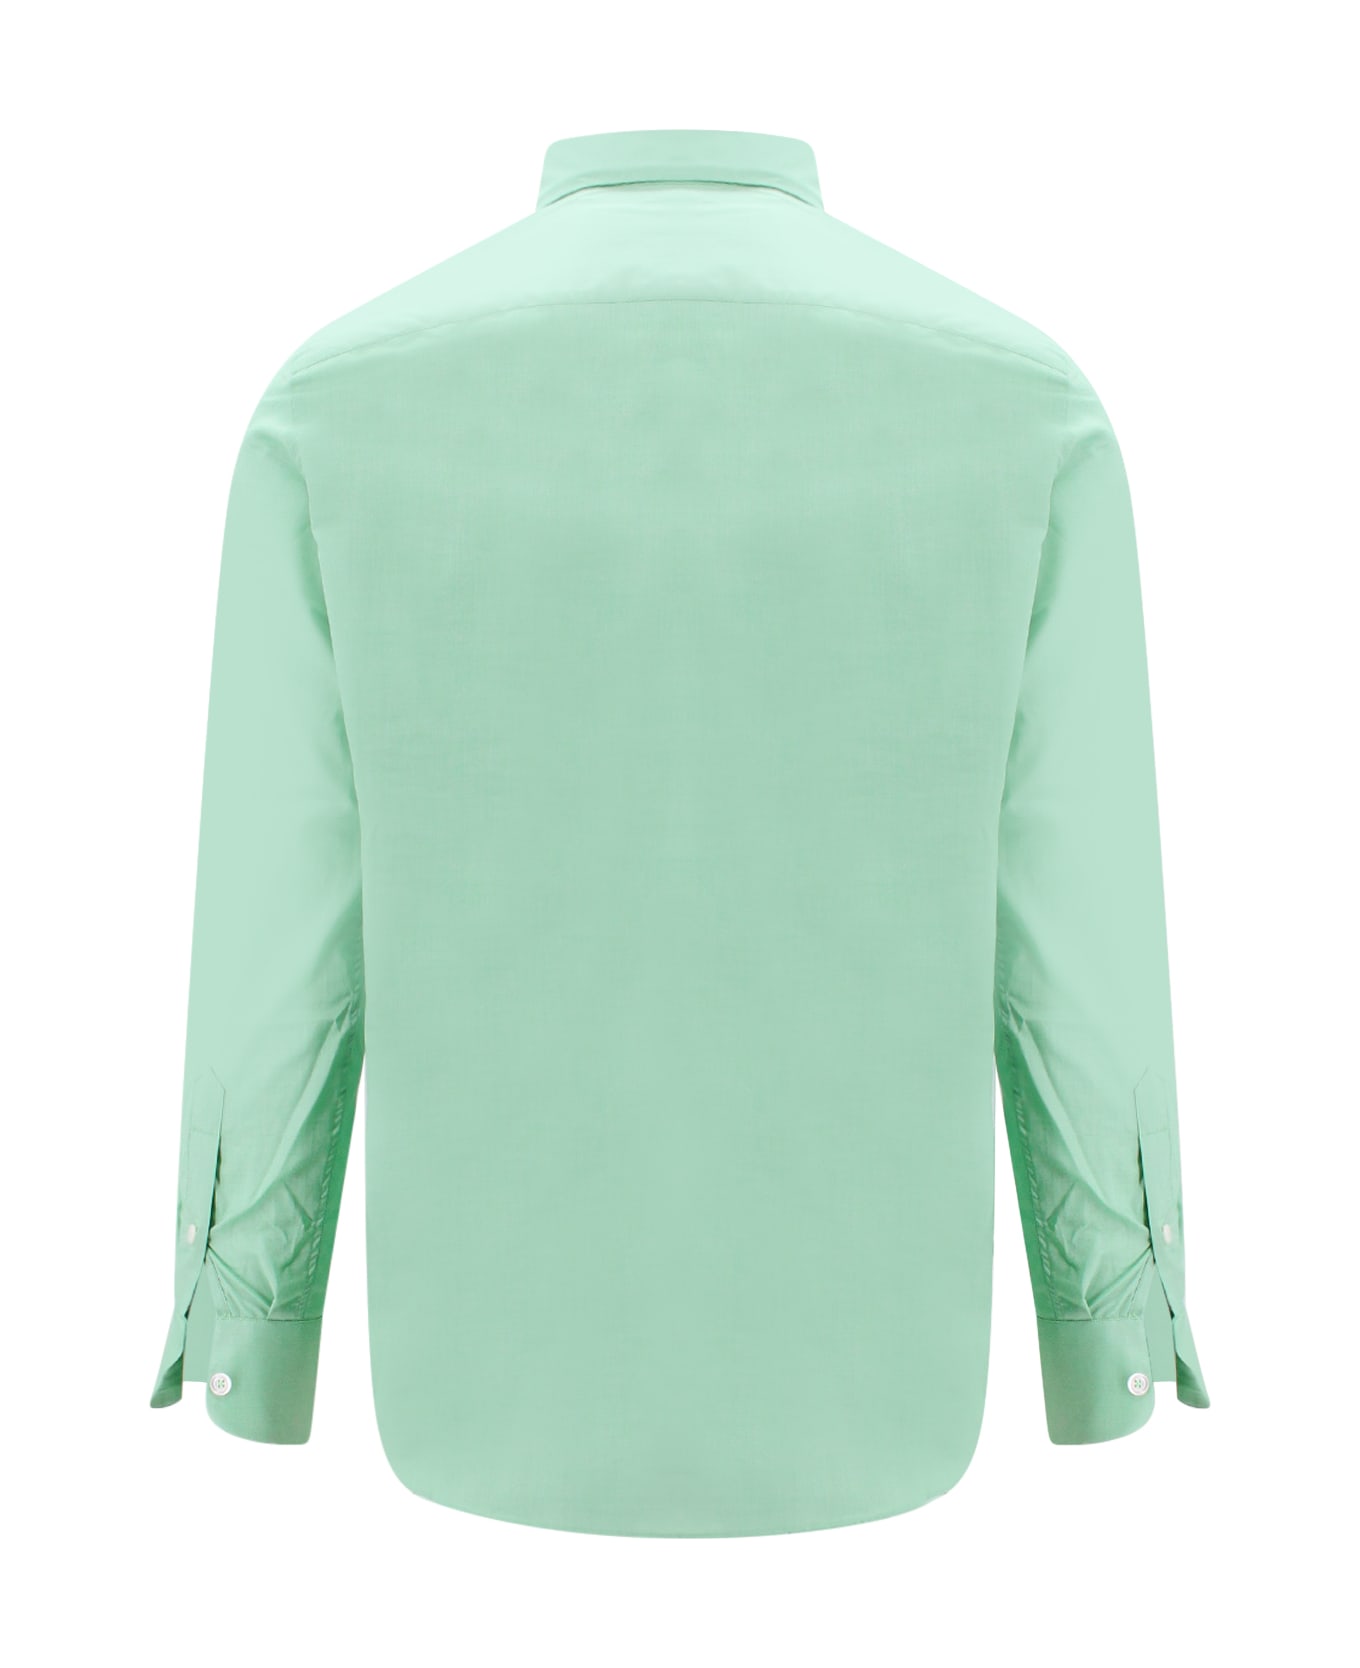 PT Torino Shirt - Green